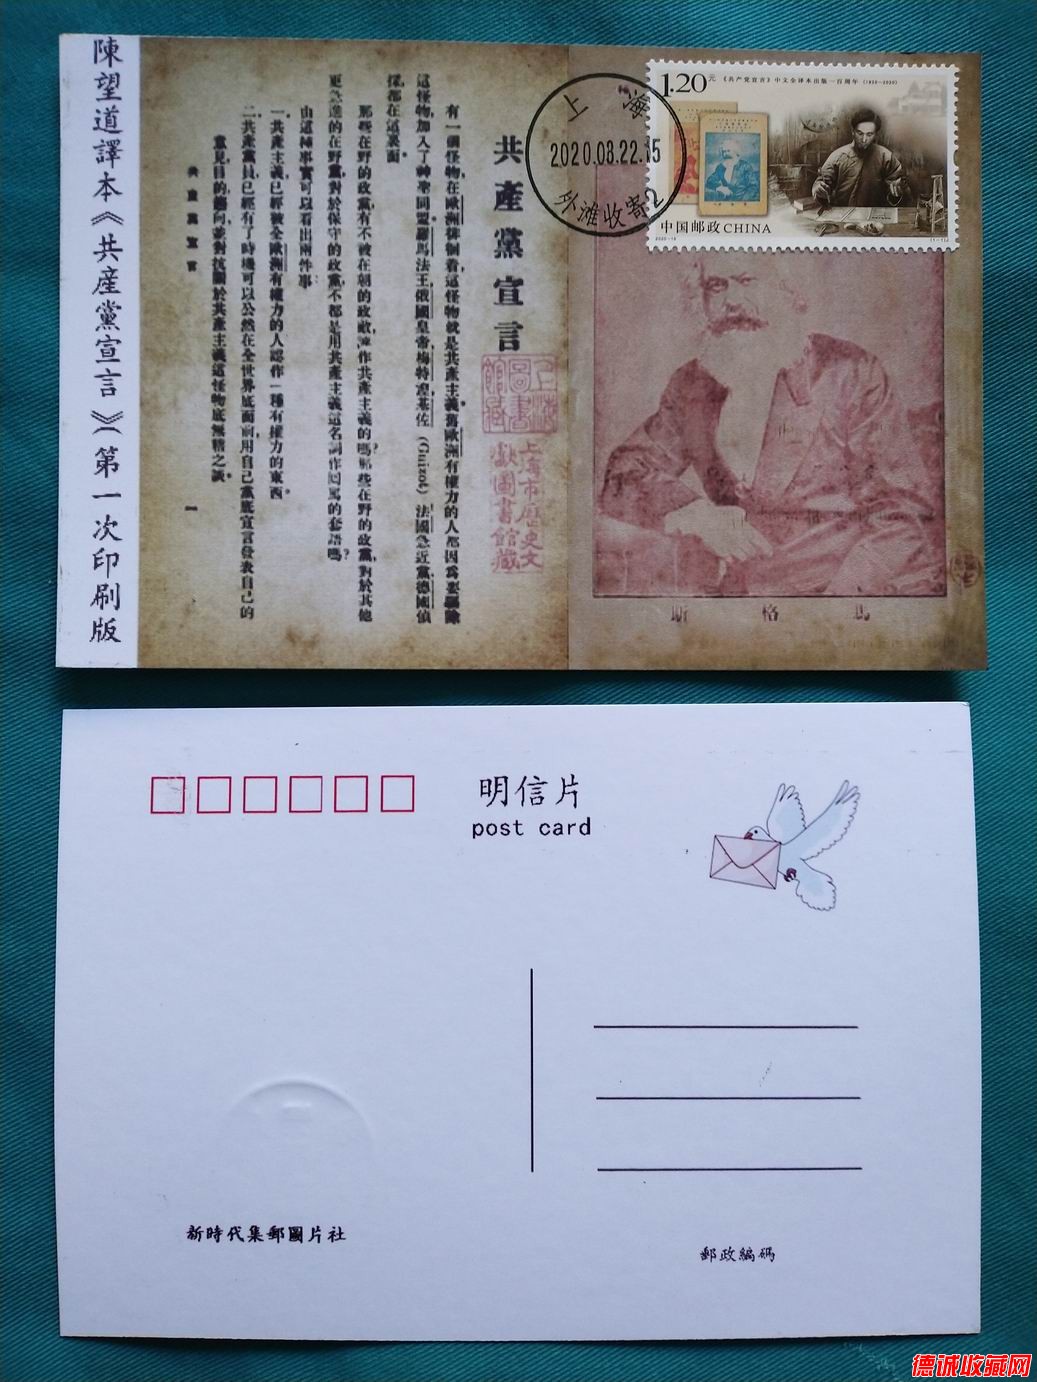 2020年共產黨宣言郵票極限片1枚(上海首日戳)之四.jpg